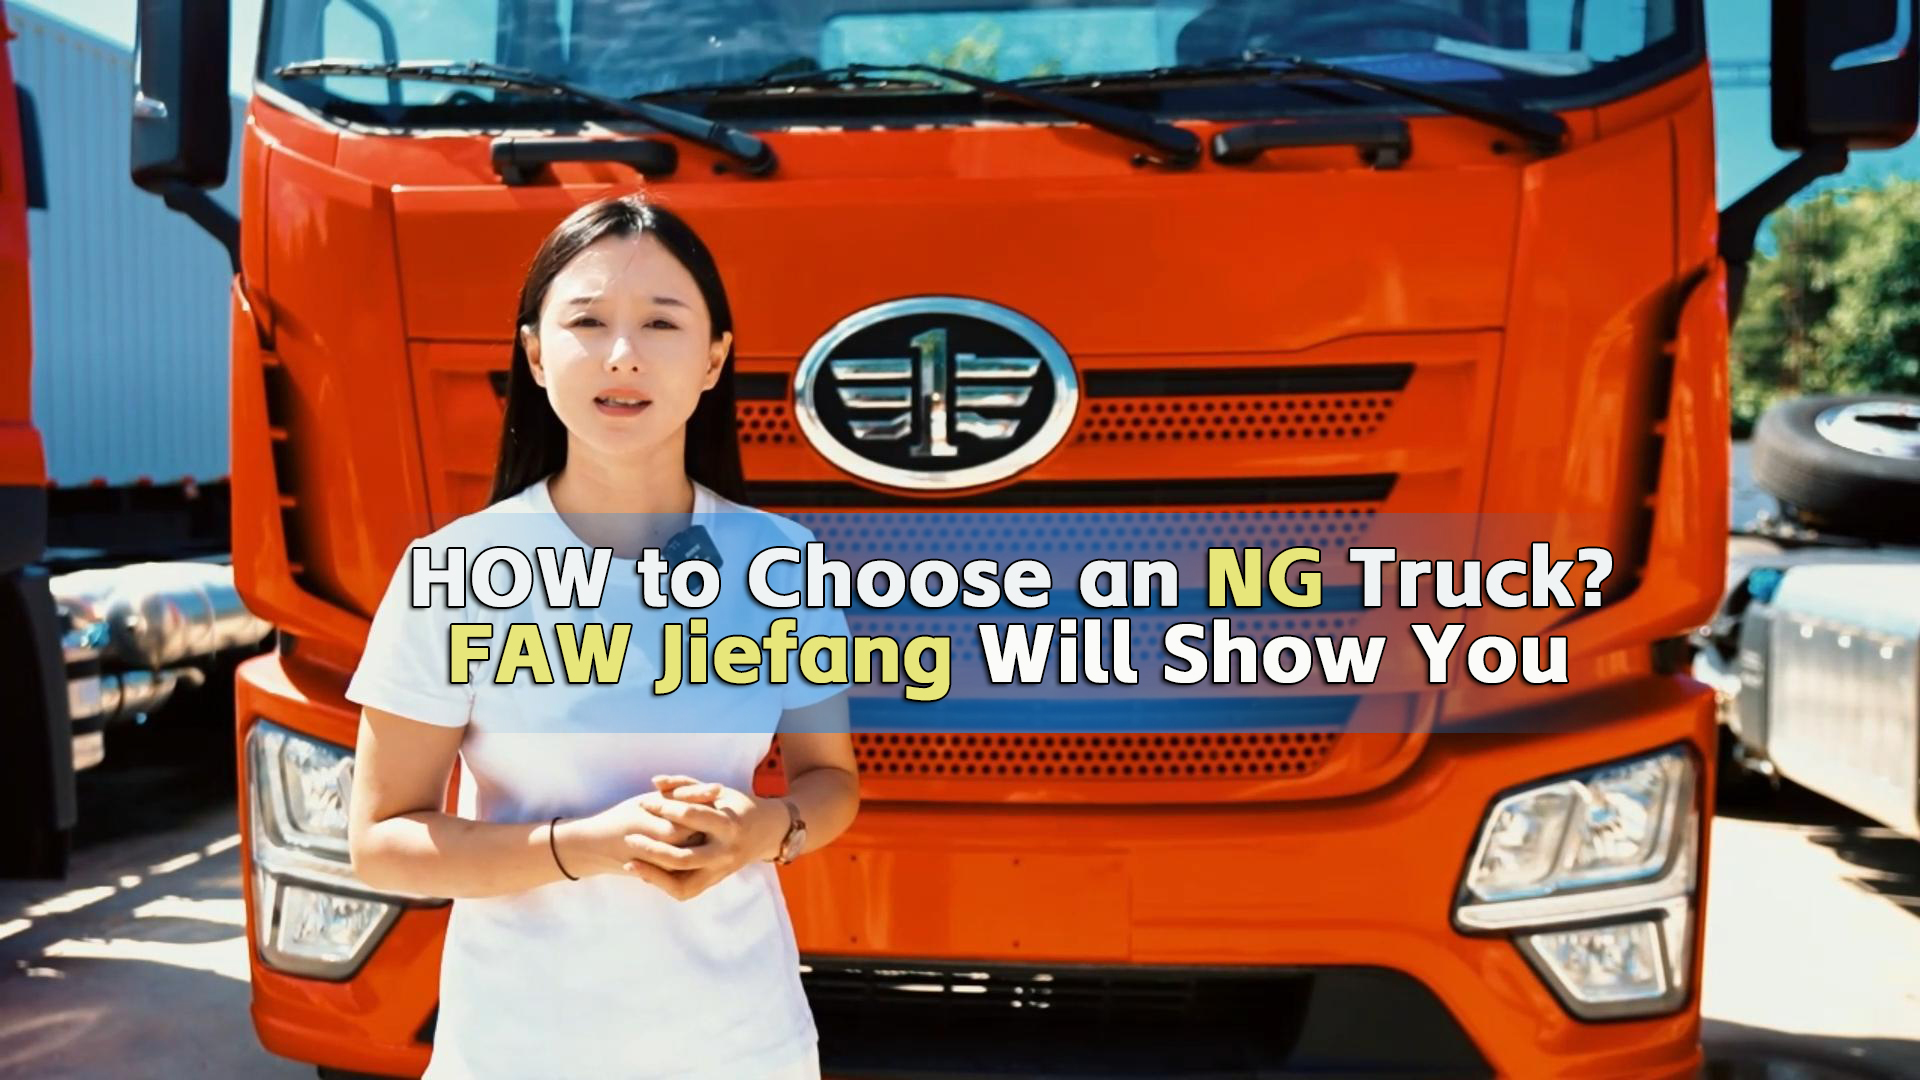 FAW Jiefang Show You How to Choose an NG Truck